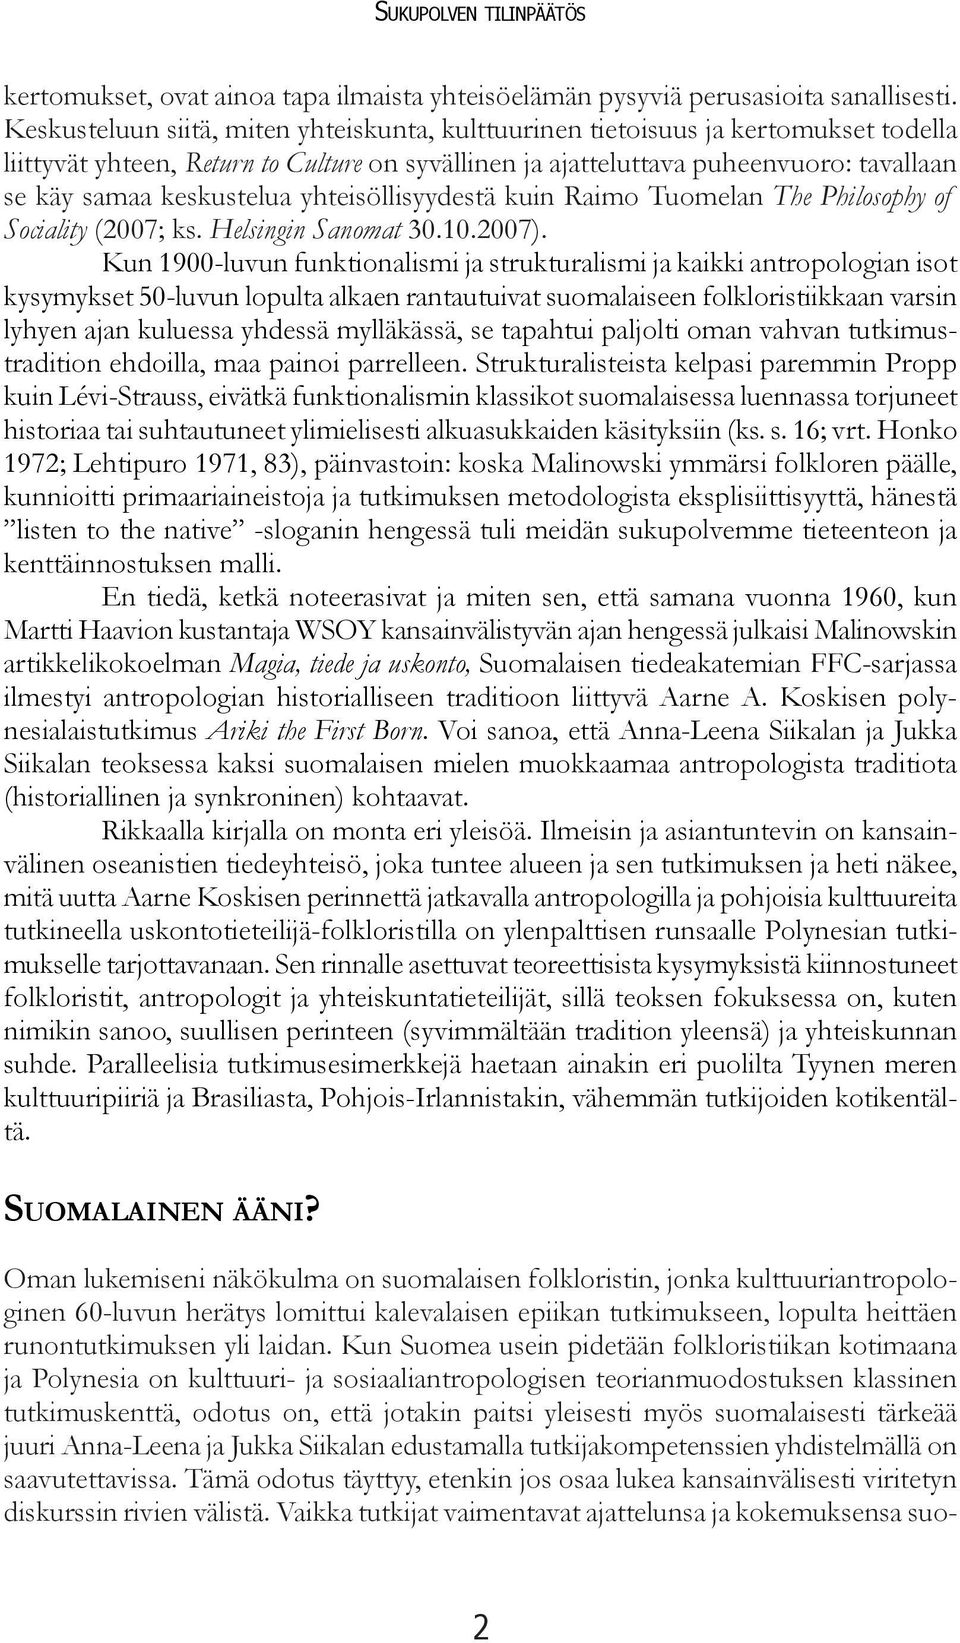 keskustelua yhteisöllisyydestä kuin Raimo Tuomelan The Philosophy of Sociality (2007; ks. Helsingin Sanomat 30.10.2007).